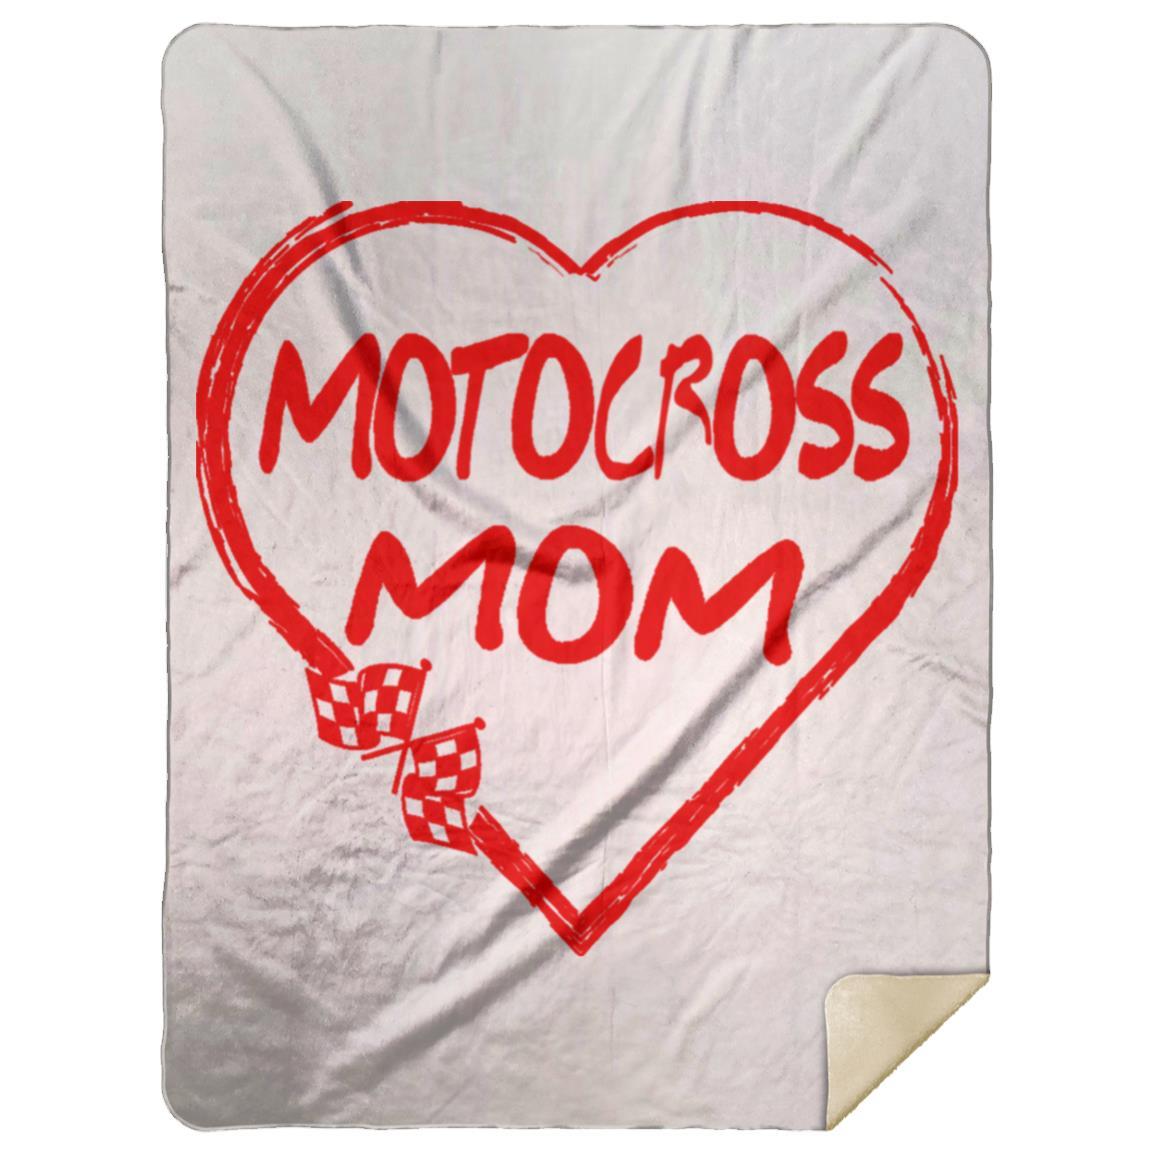 Motocross Mom Heart Premium Mink Sherpa Blanket 60x80